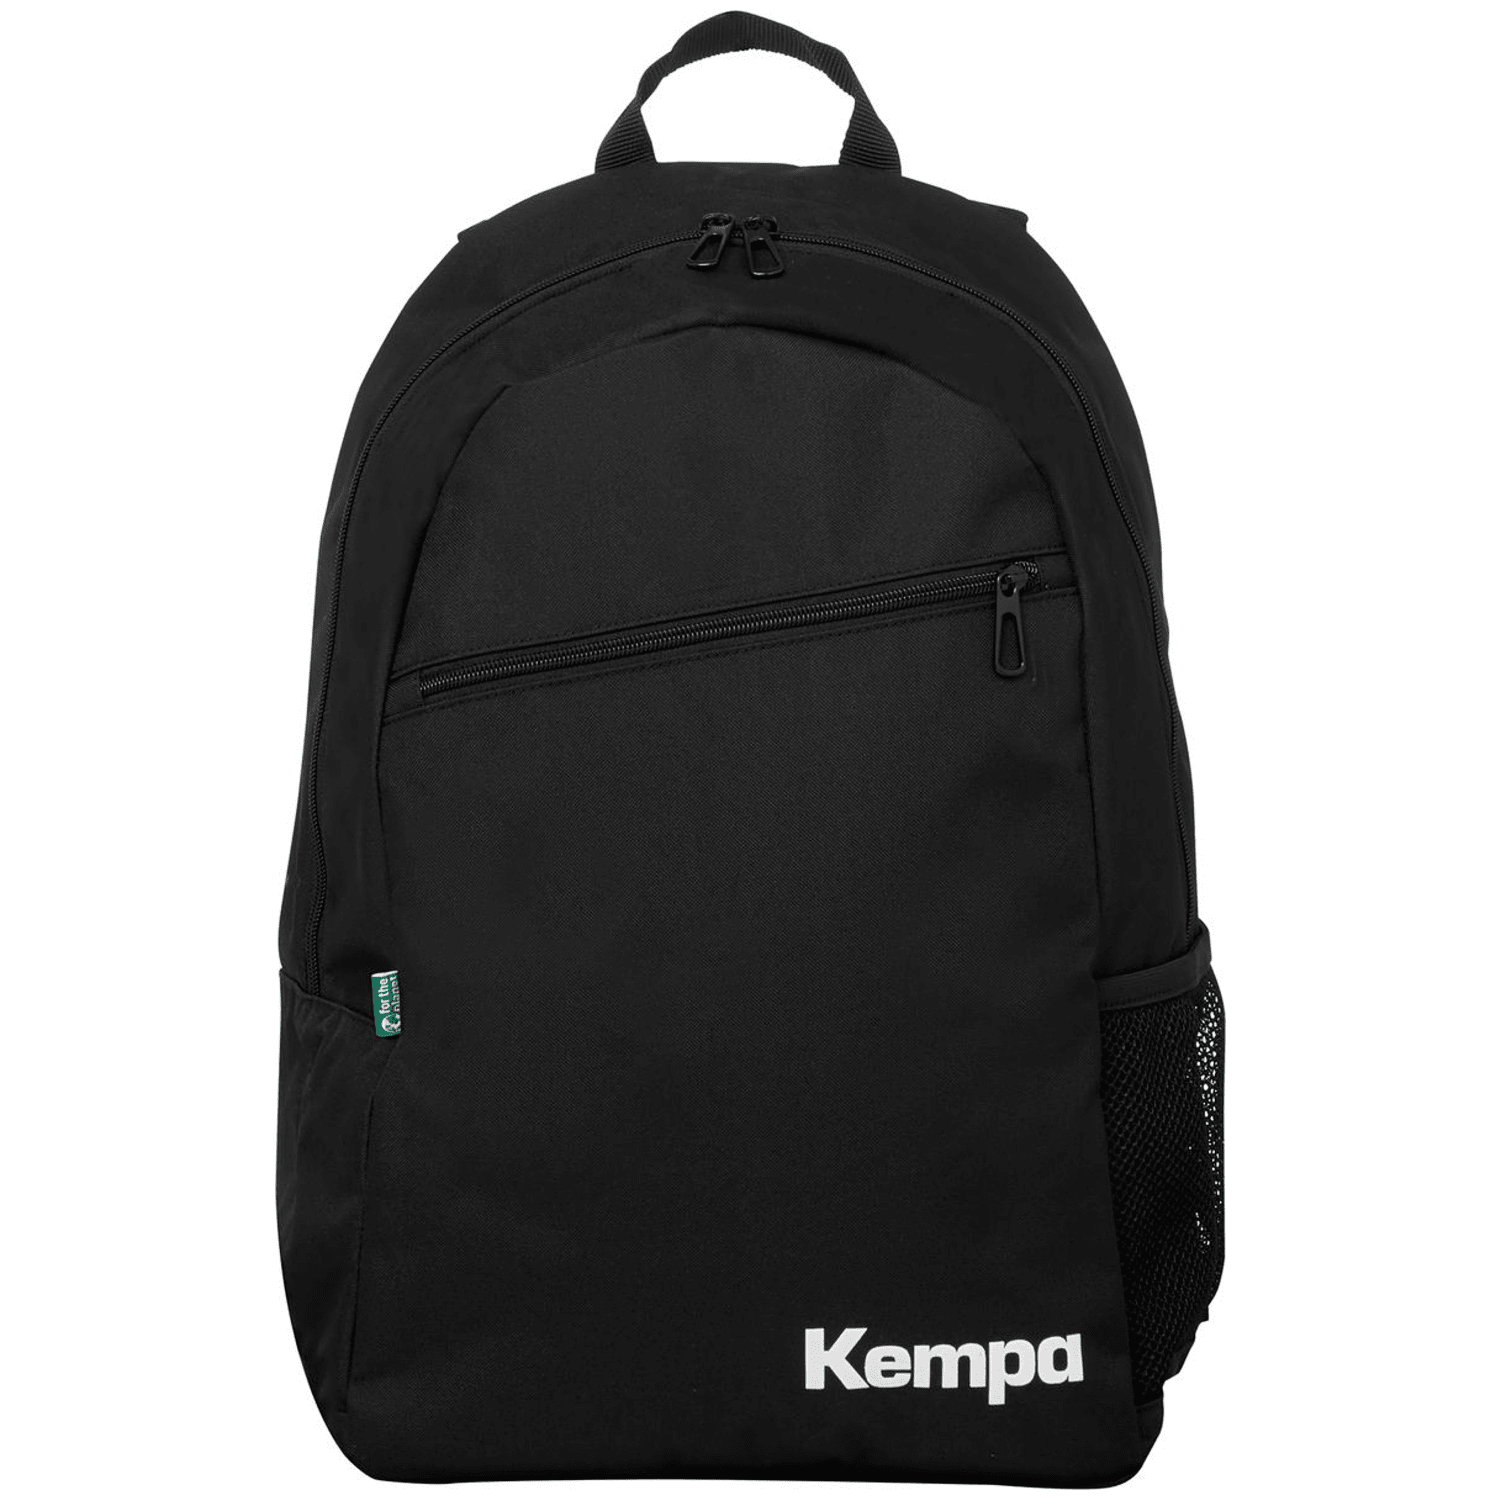 Kempa Rucksack Team Daybag